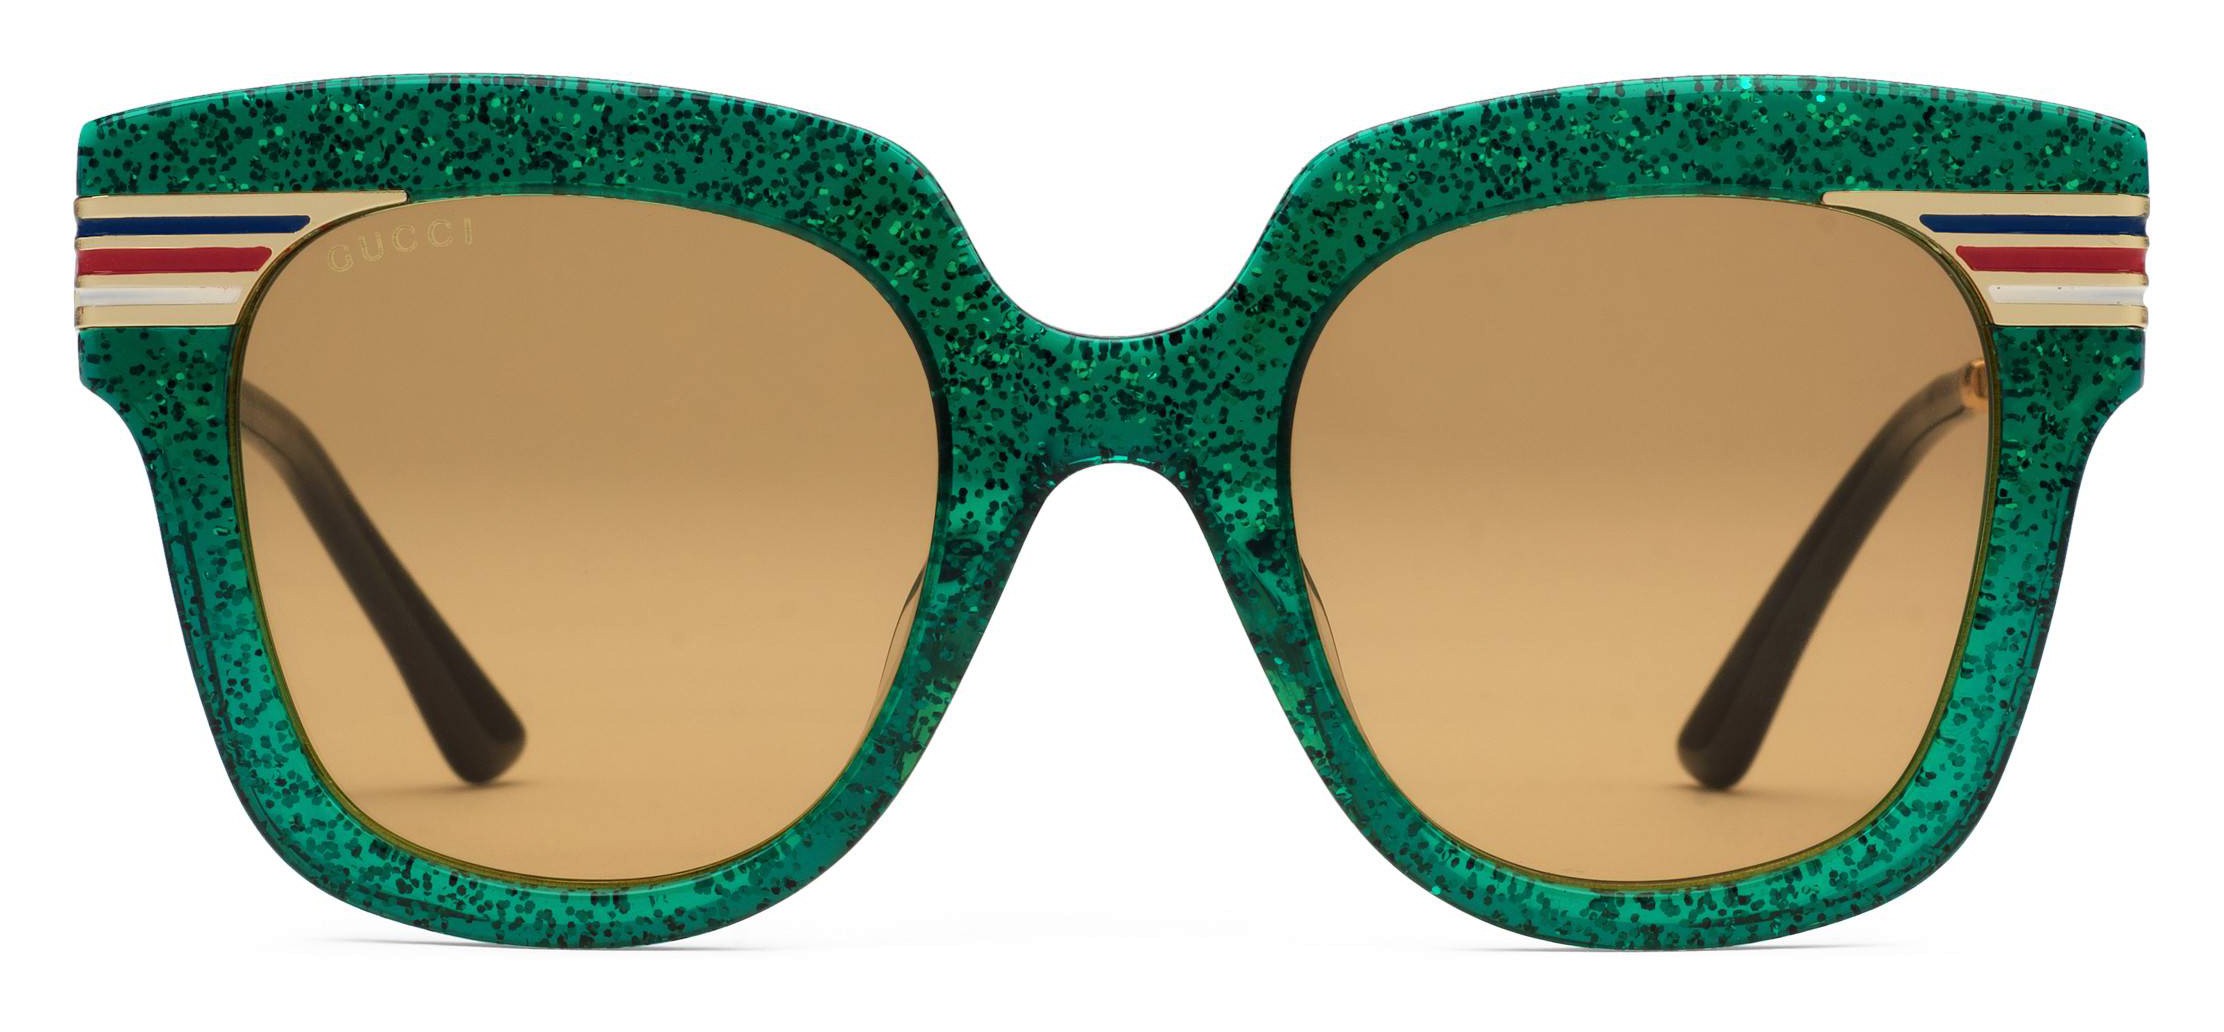 Gucci - Square Frame Acetate Sunglasses Glitter - Emerald Green Glitter Acetate and Gold - Gucci Eyewear -